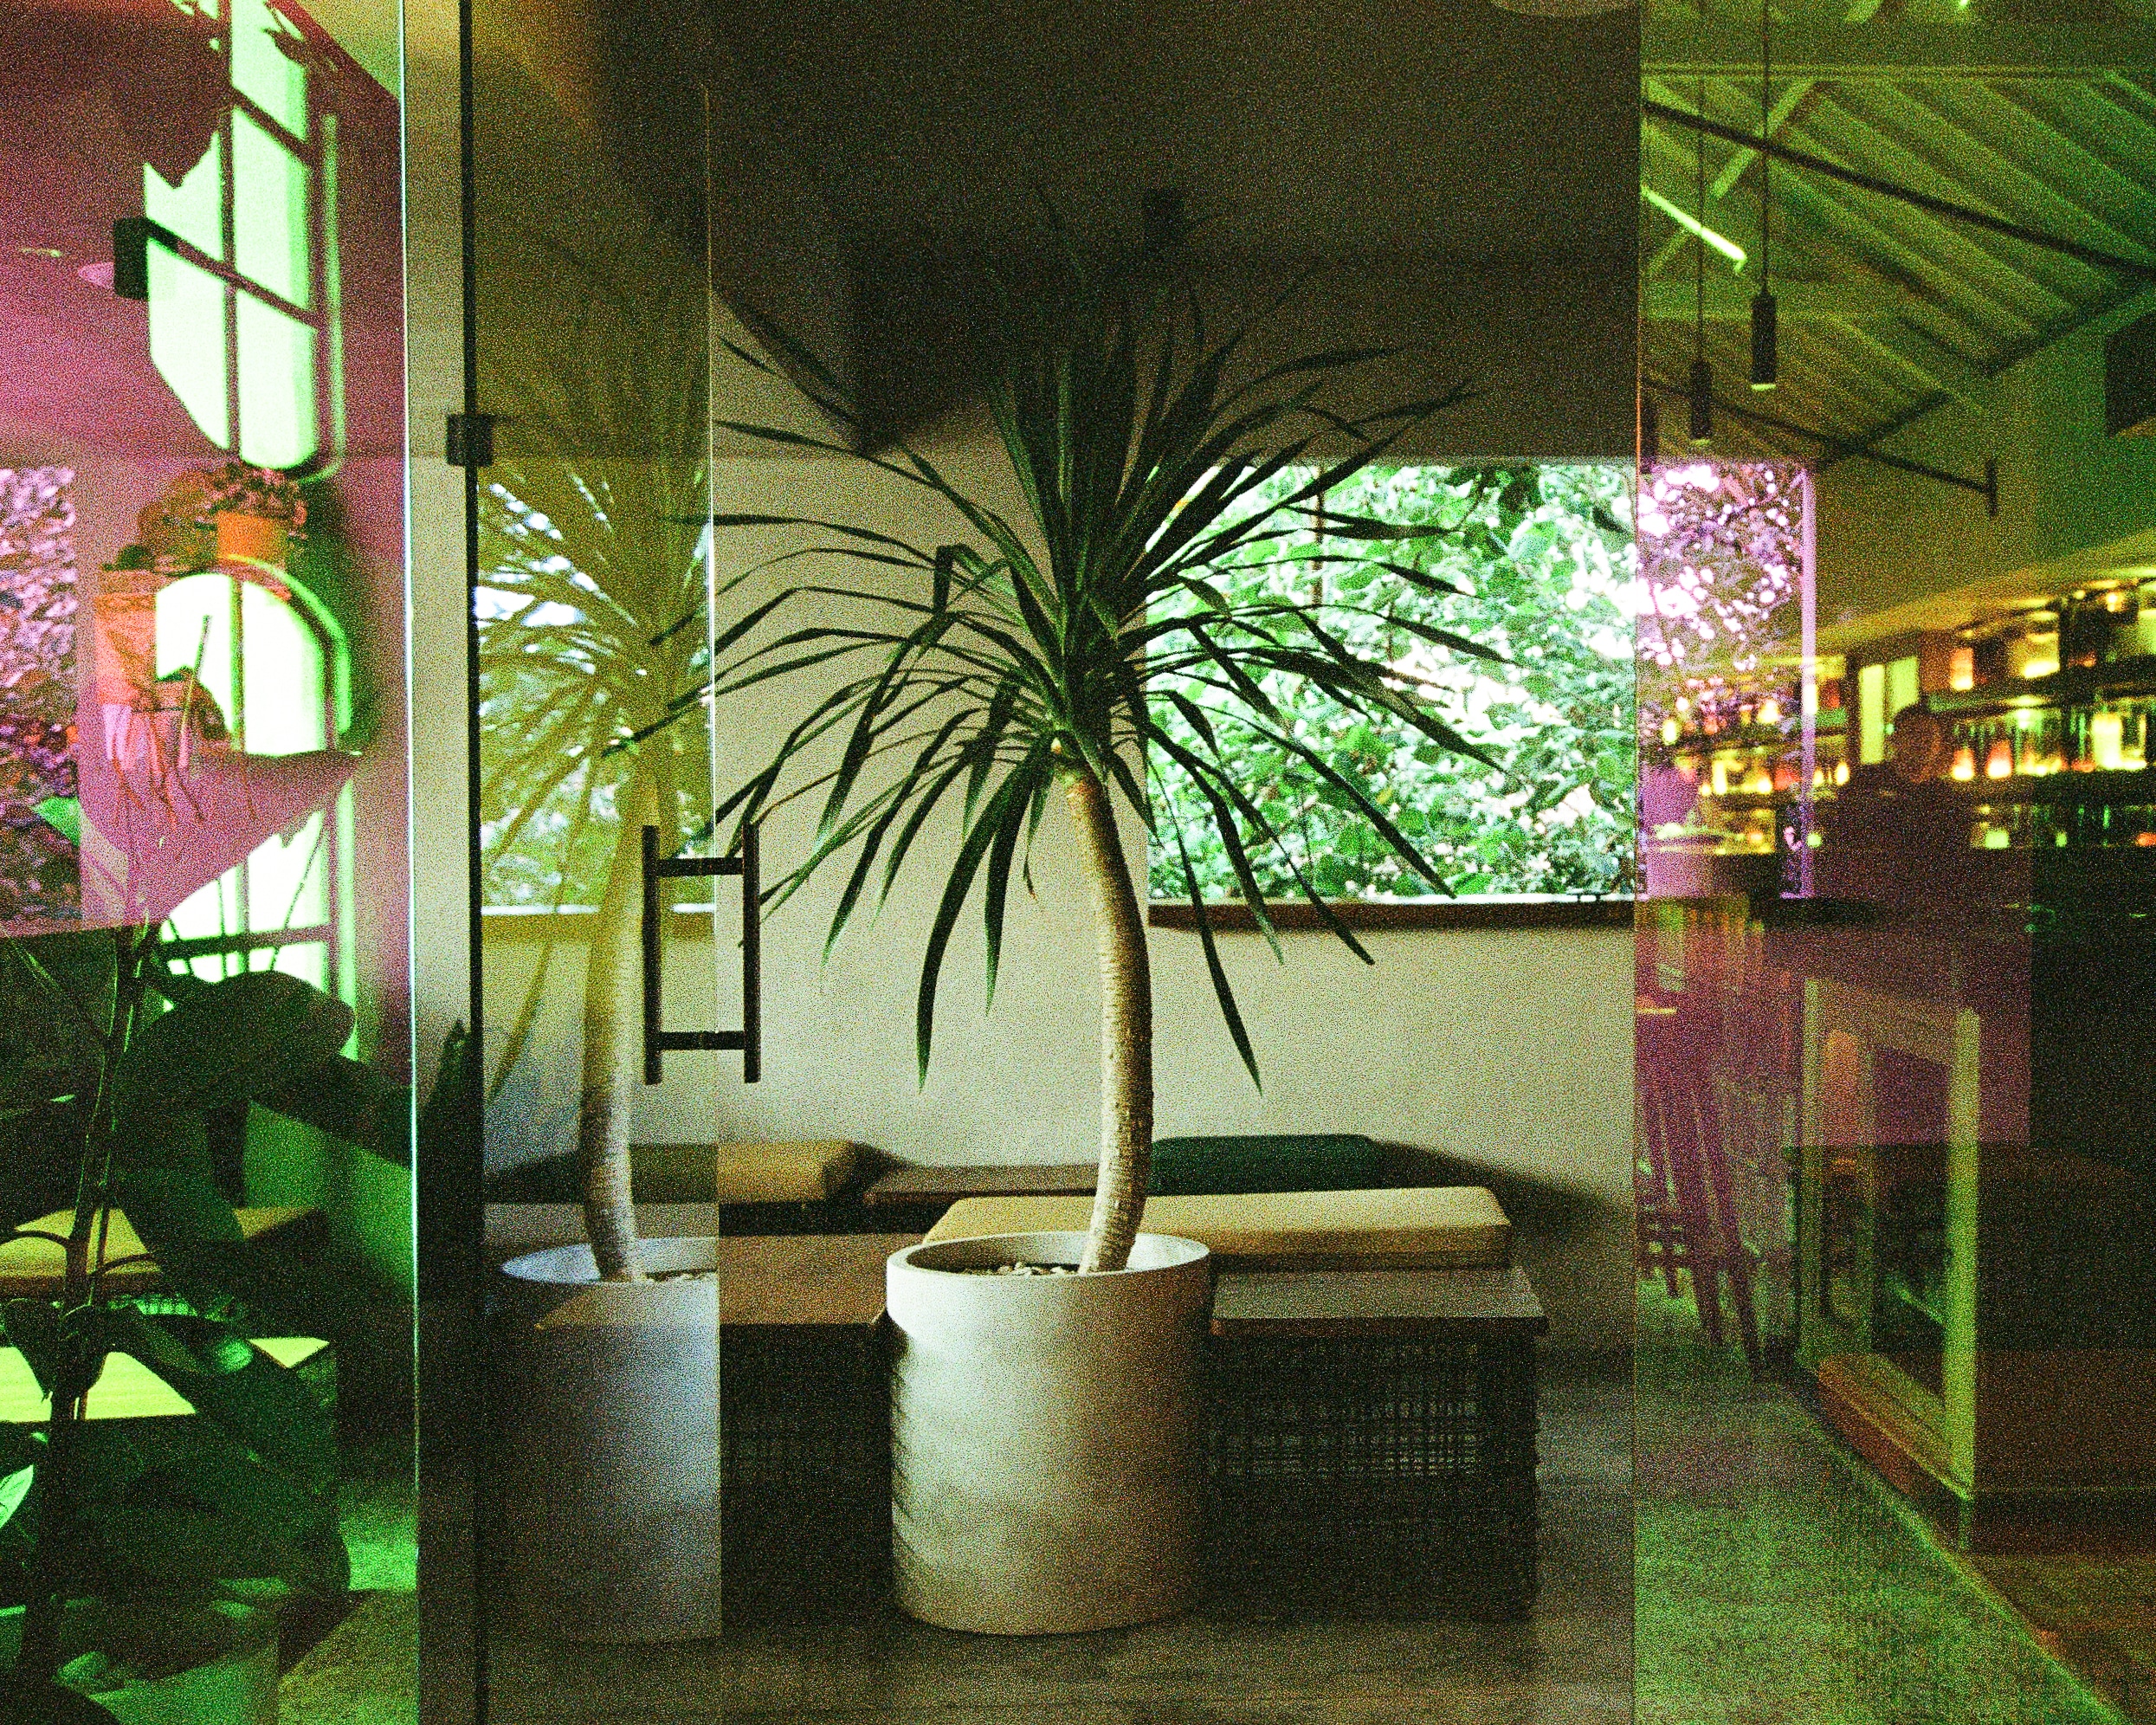 Design Assembly - Club Soda - Bar in Bali - Interior Design - Bar Interior - Bali Architect - Lounge Area - Outside Area